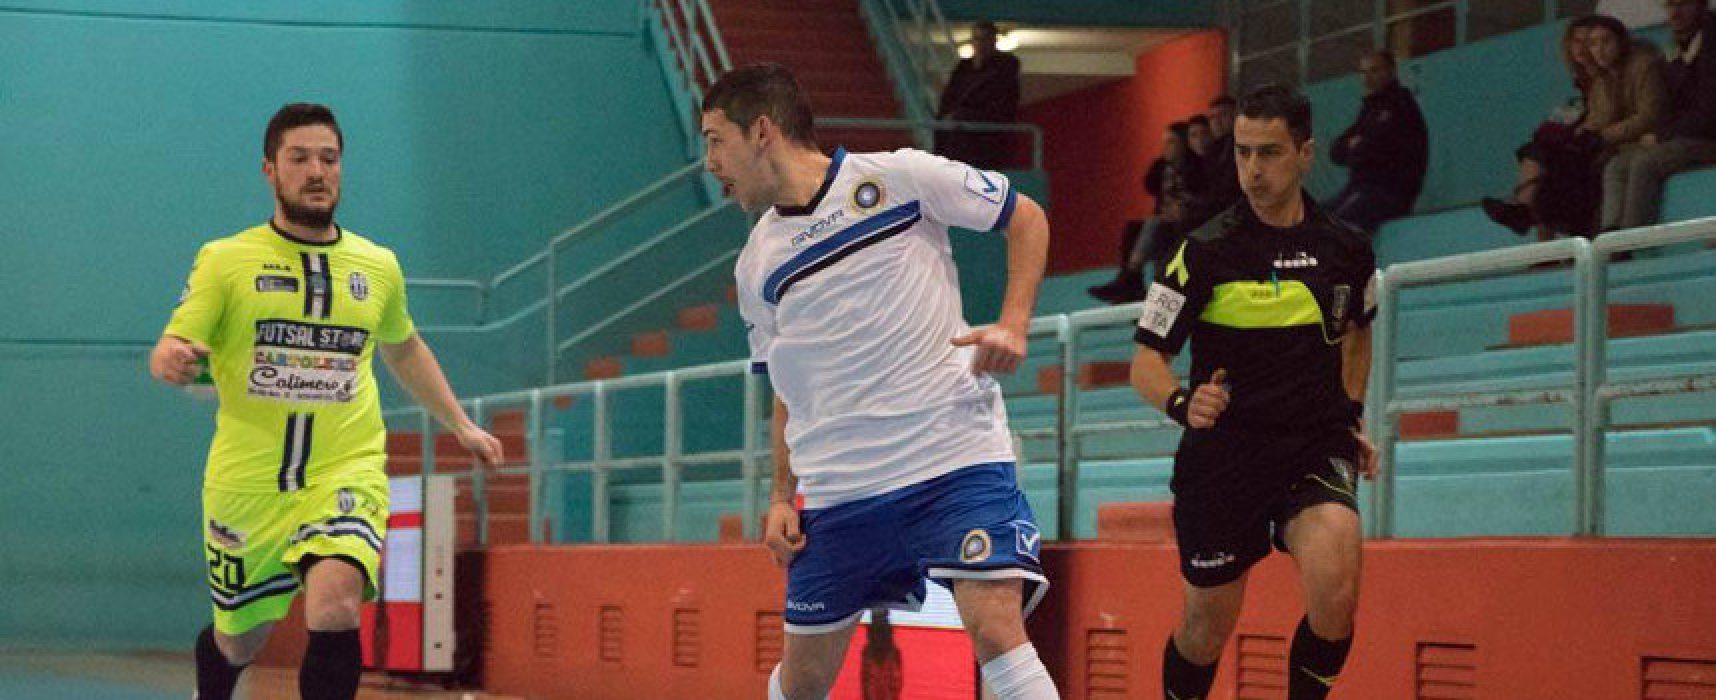 Futsal Bisceglie sconfitto nel derby casalingo dall’Atletico Cassano